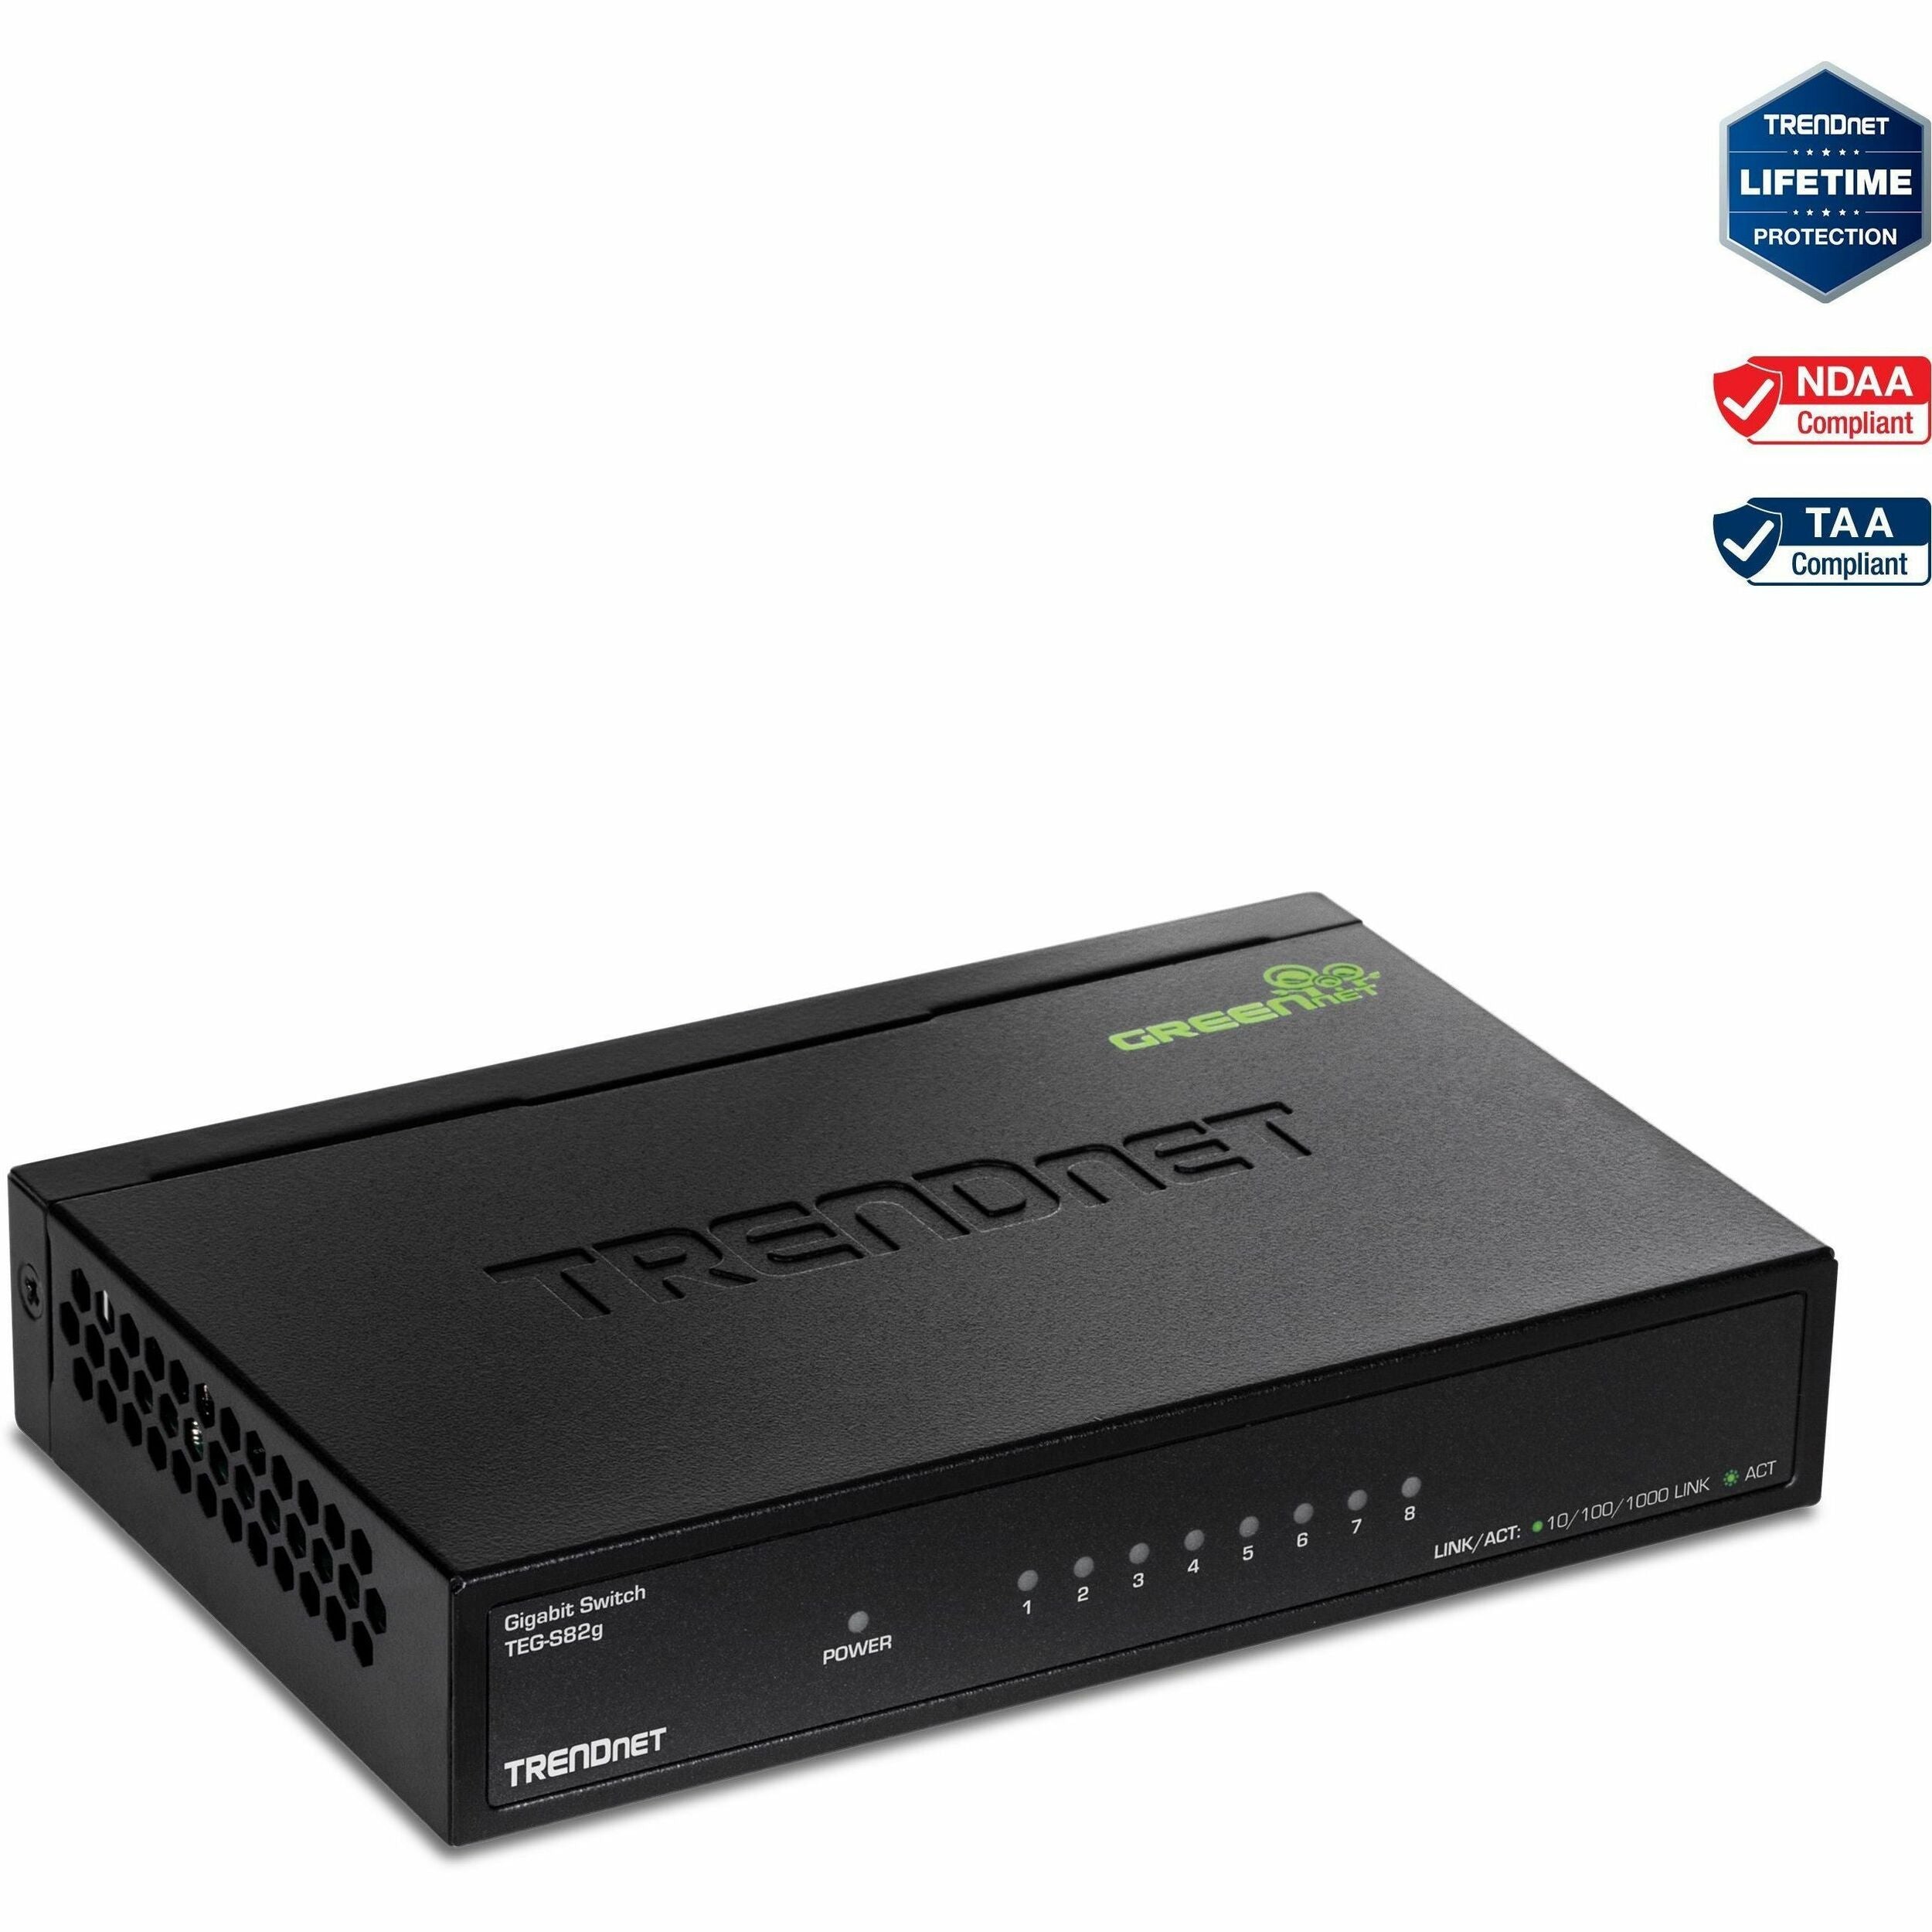 TRENDnet 8-Port Gigabit GREENnet Switch, Ethernet Network Switch, TEG-S82G, 8 x 10-100-1000 Mbps Gigabit Ethernet Ports, Ethernet Splitter, 16 Gbps, Metal, Lifetime Protection, Black - TEG-S82g